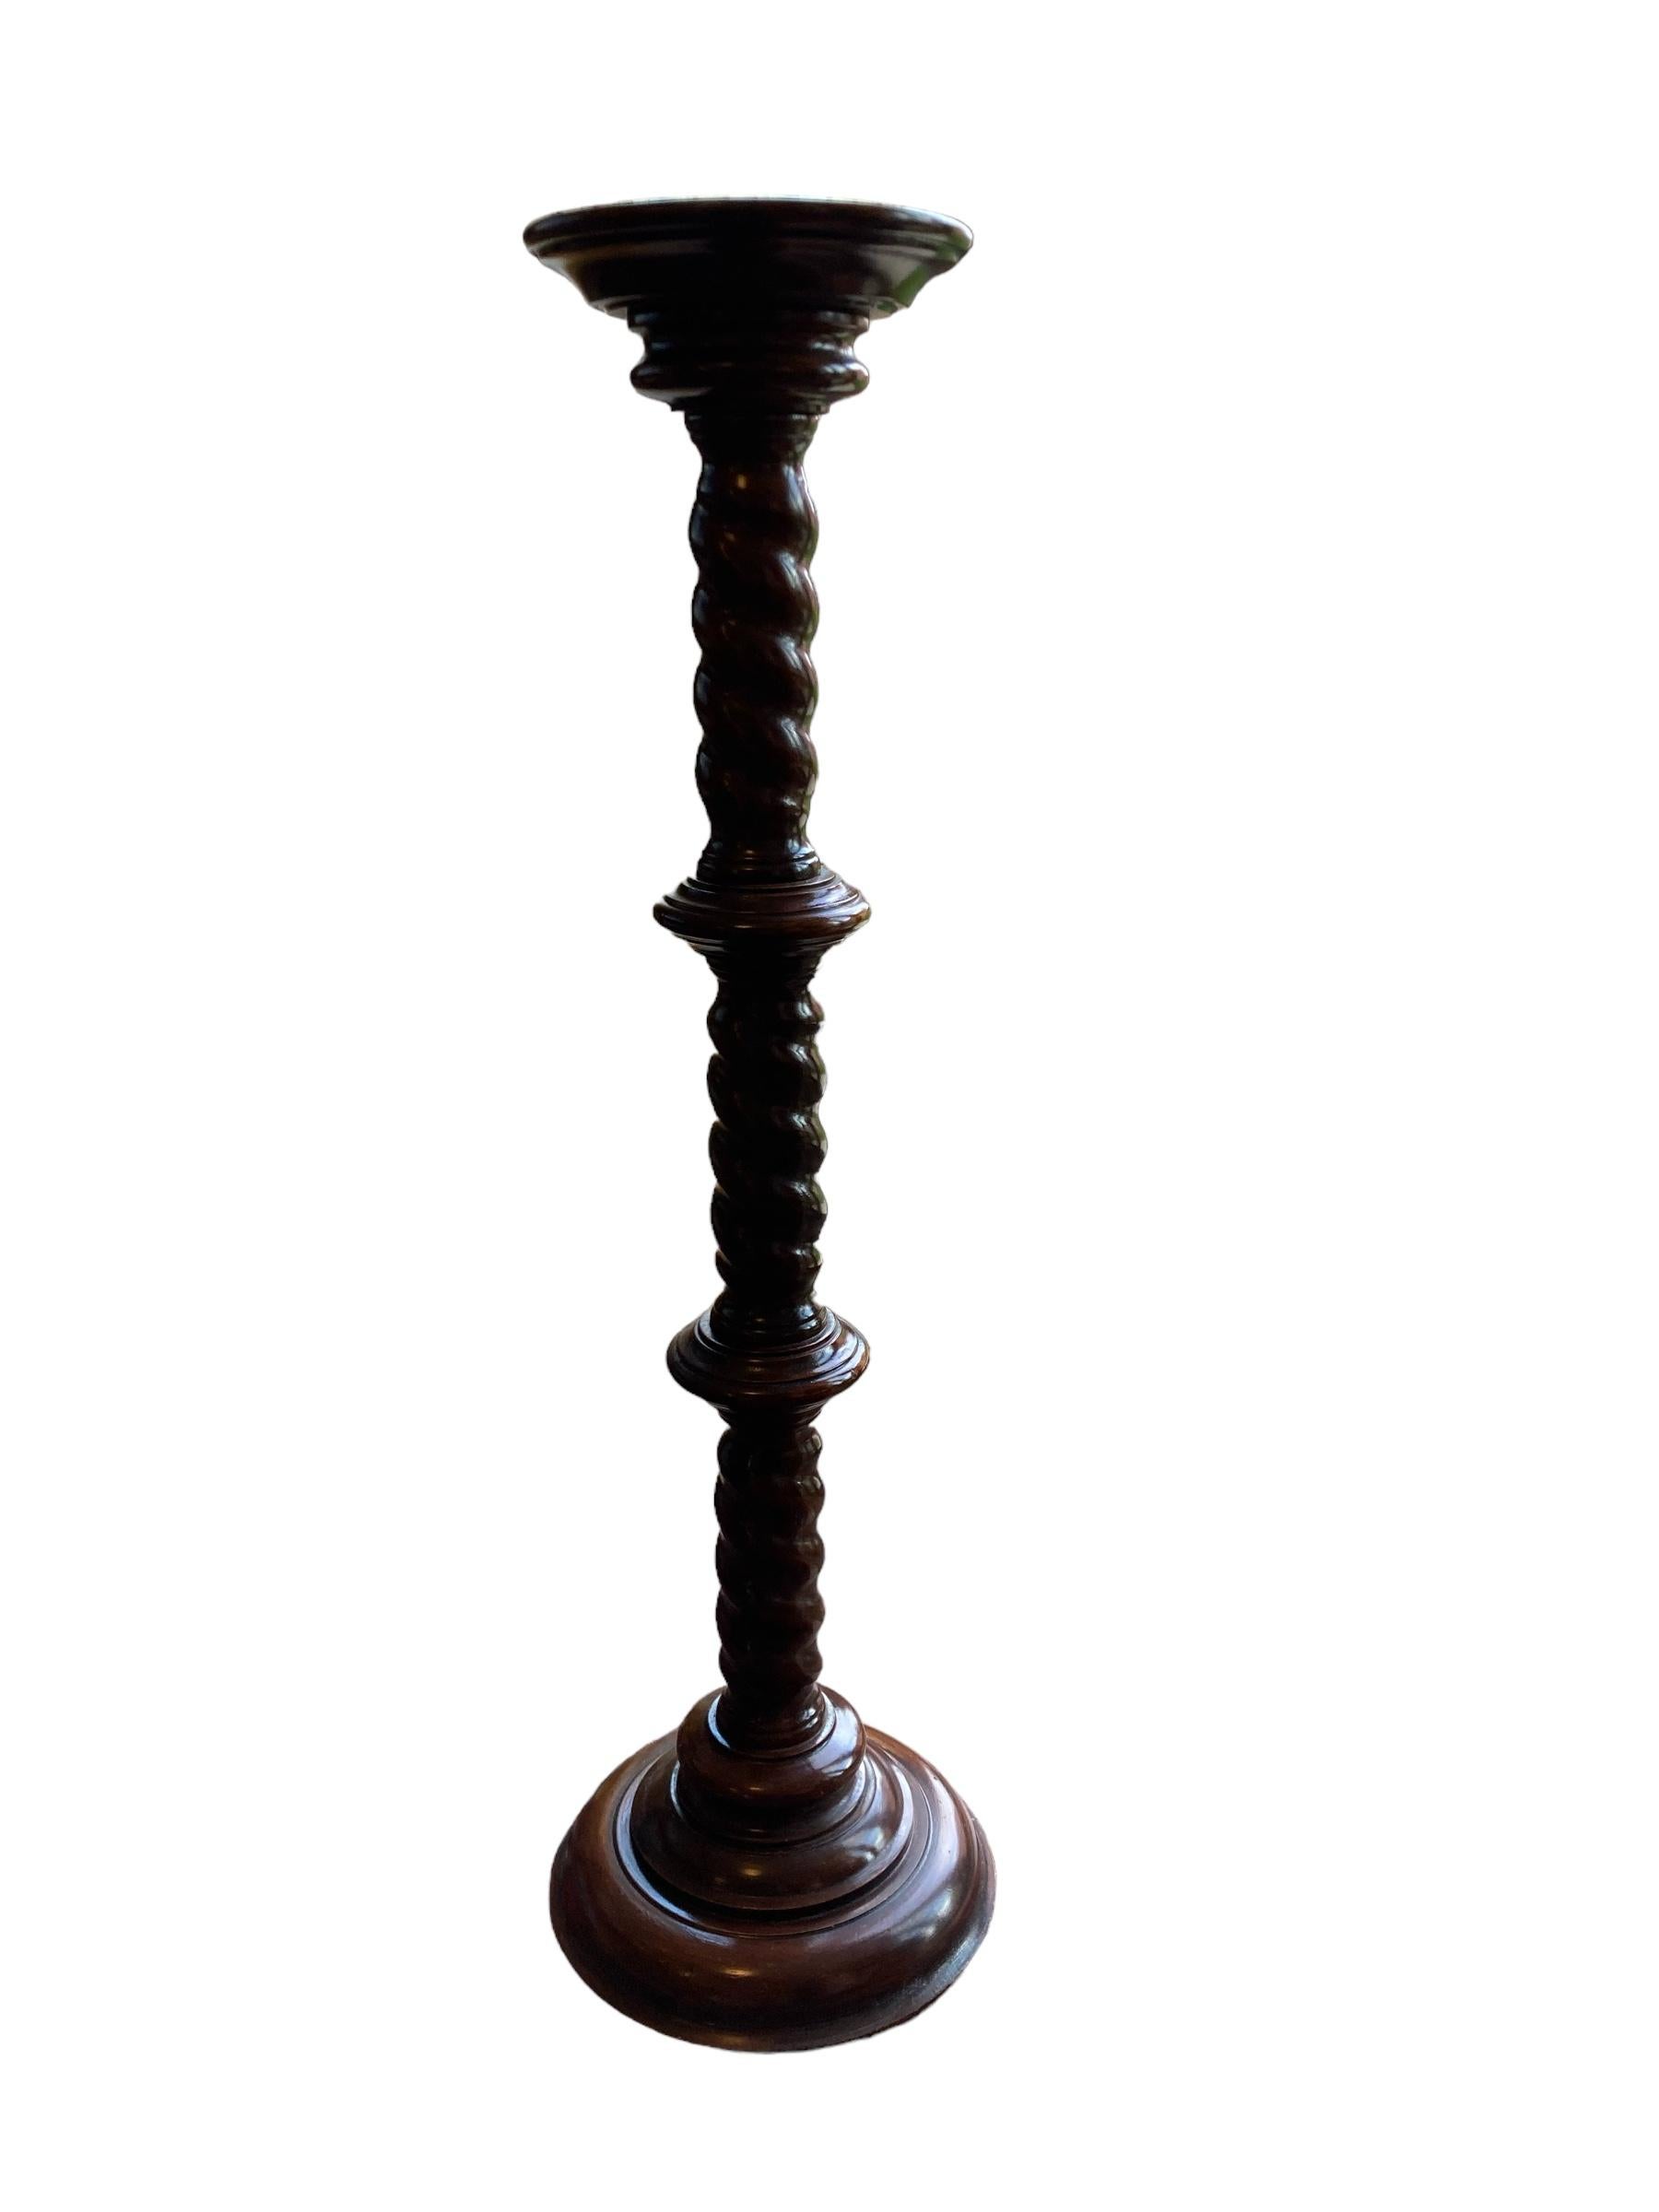 Geschnitzte Mahagoni-Sockeltorchere aus dem 19. Jahrhundert mit fesselndem Gerstendrehmuster. Dieses exquisite Stück wurde mit Präzision und Liebe zum Detail gefertigt und verleiht jedem Raum einen Hauch von Raffinesse. Die robuste Konstruktion aus